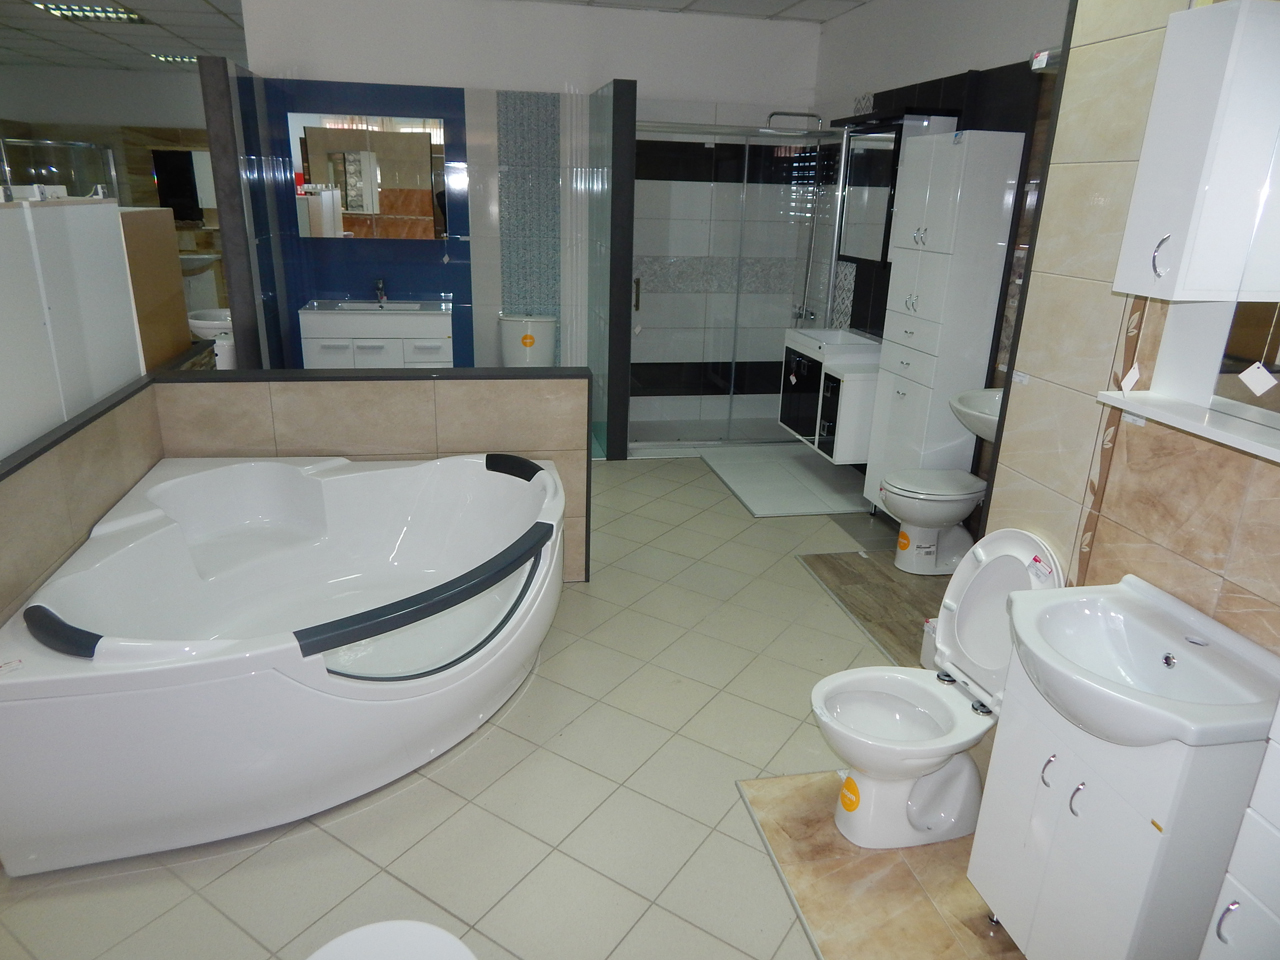 Photo 4 - DANKOM LTD - Bathrooms, bathroom accessories, ceramic, Cacak